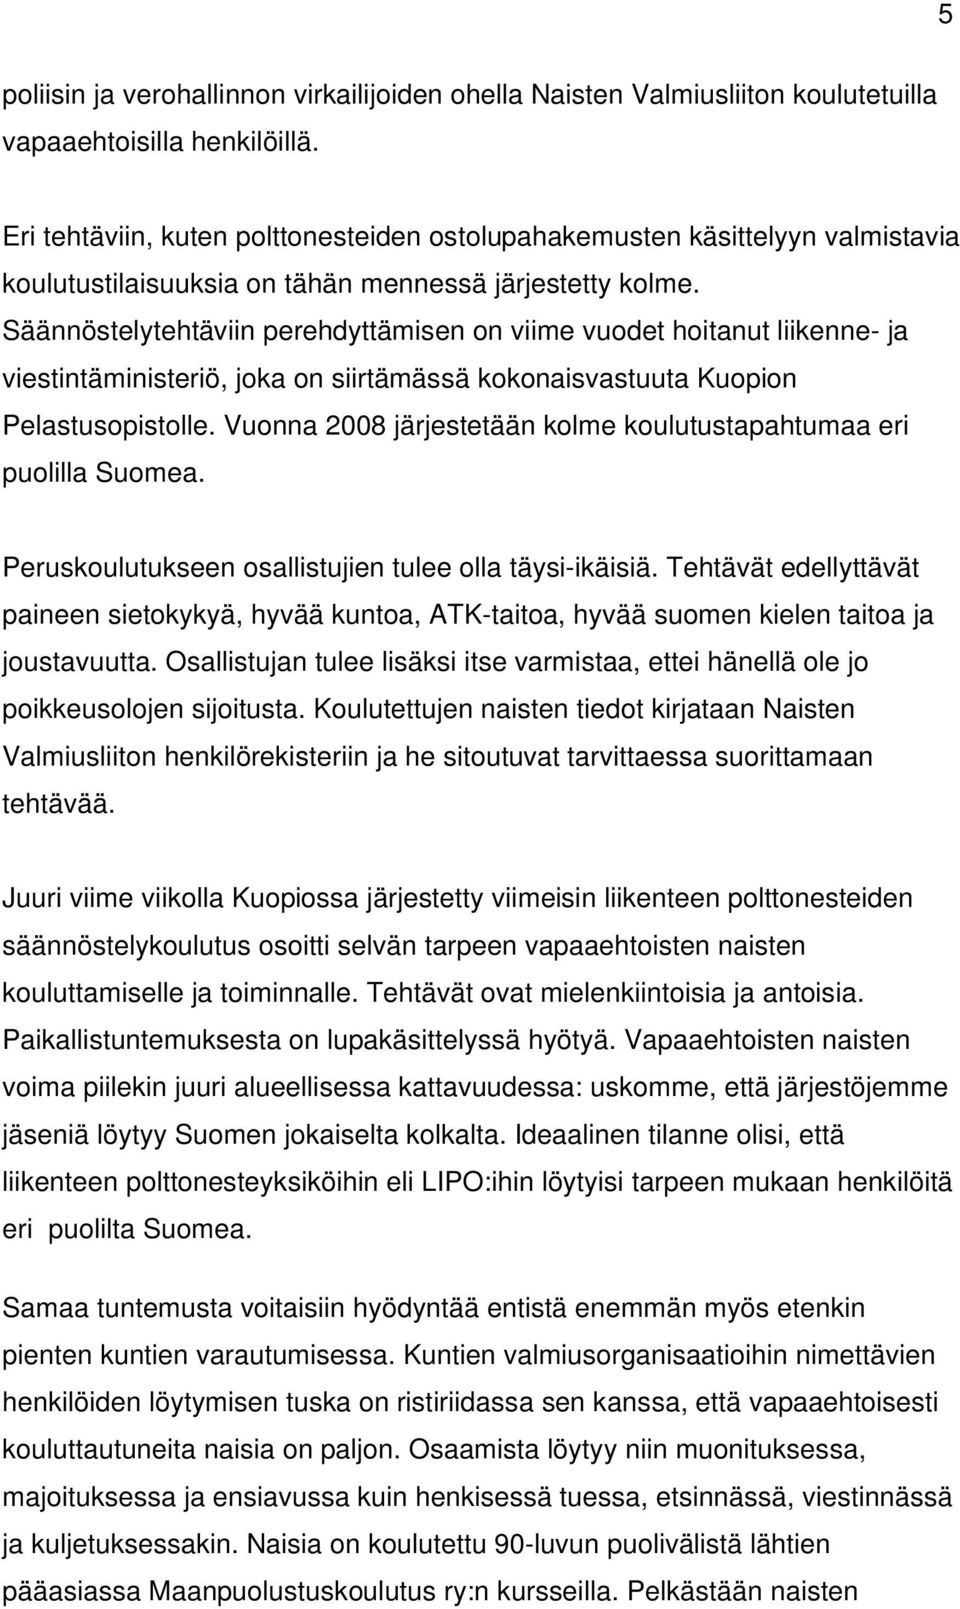 Säännöstelytehtäviin perehdyttämisen on viime vuodet hoitanut liikenne- ja viestintäministeriö, joka on siirtämässä kokonaisvastuuta Kuopion Pelastusopistolle.